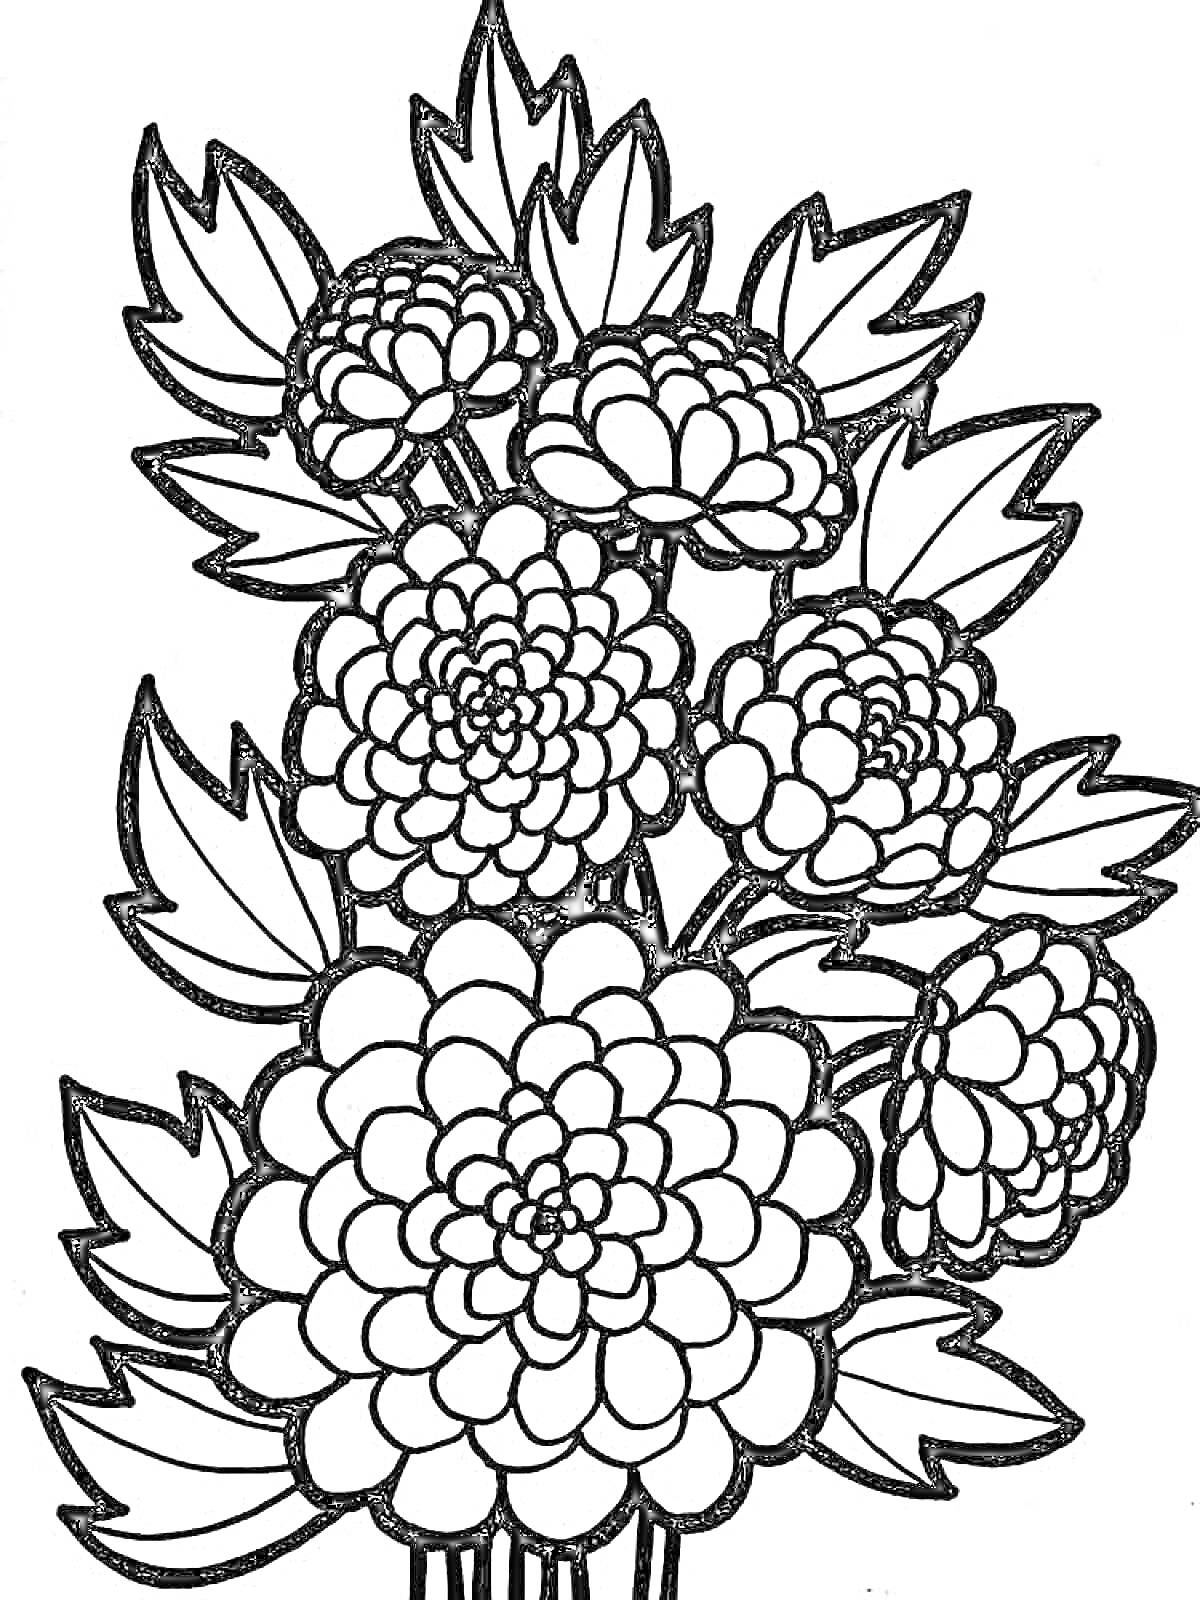 Раскраска Рисунок с хризантемами, состоящий из нескольких цветов с детализированными лепестками и листьями